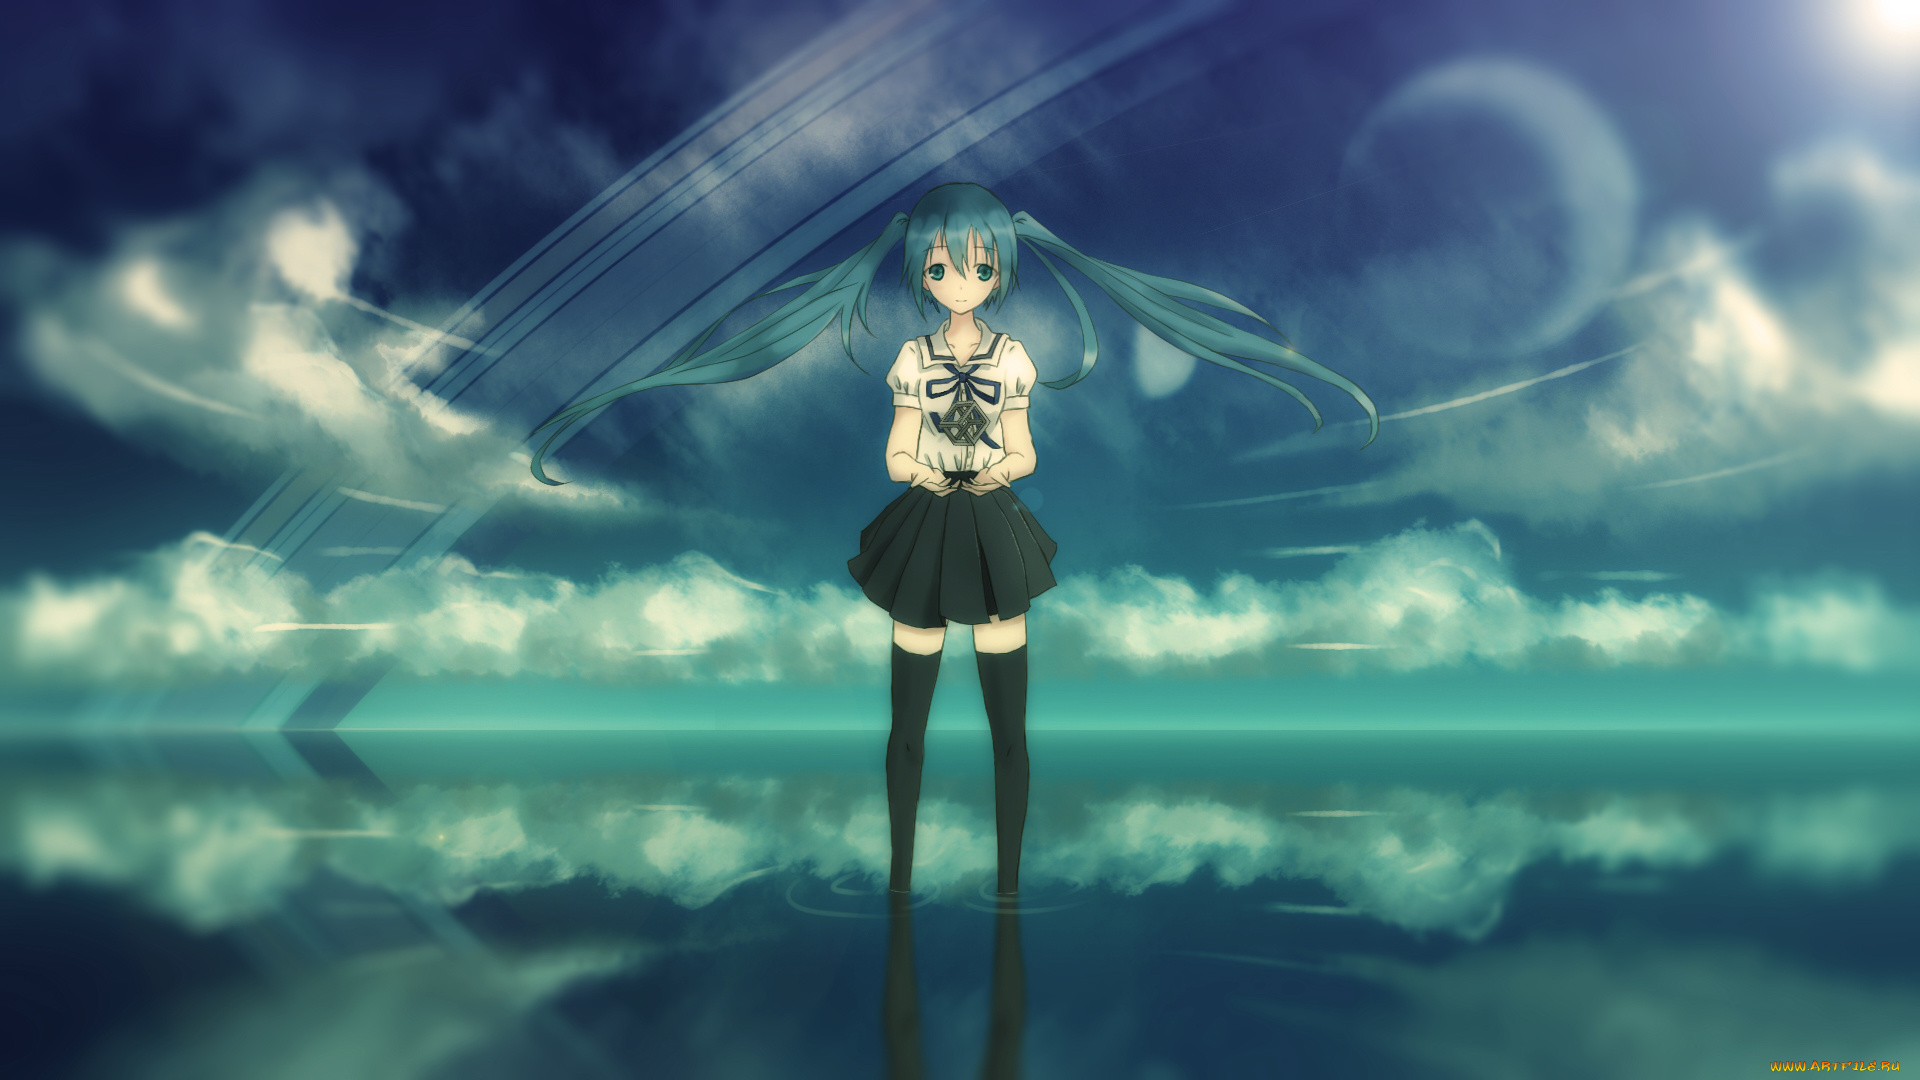 аниме, vocaloid, hatsune, miku, облака, отражение, девушка, небо, арт, вода